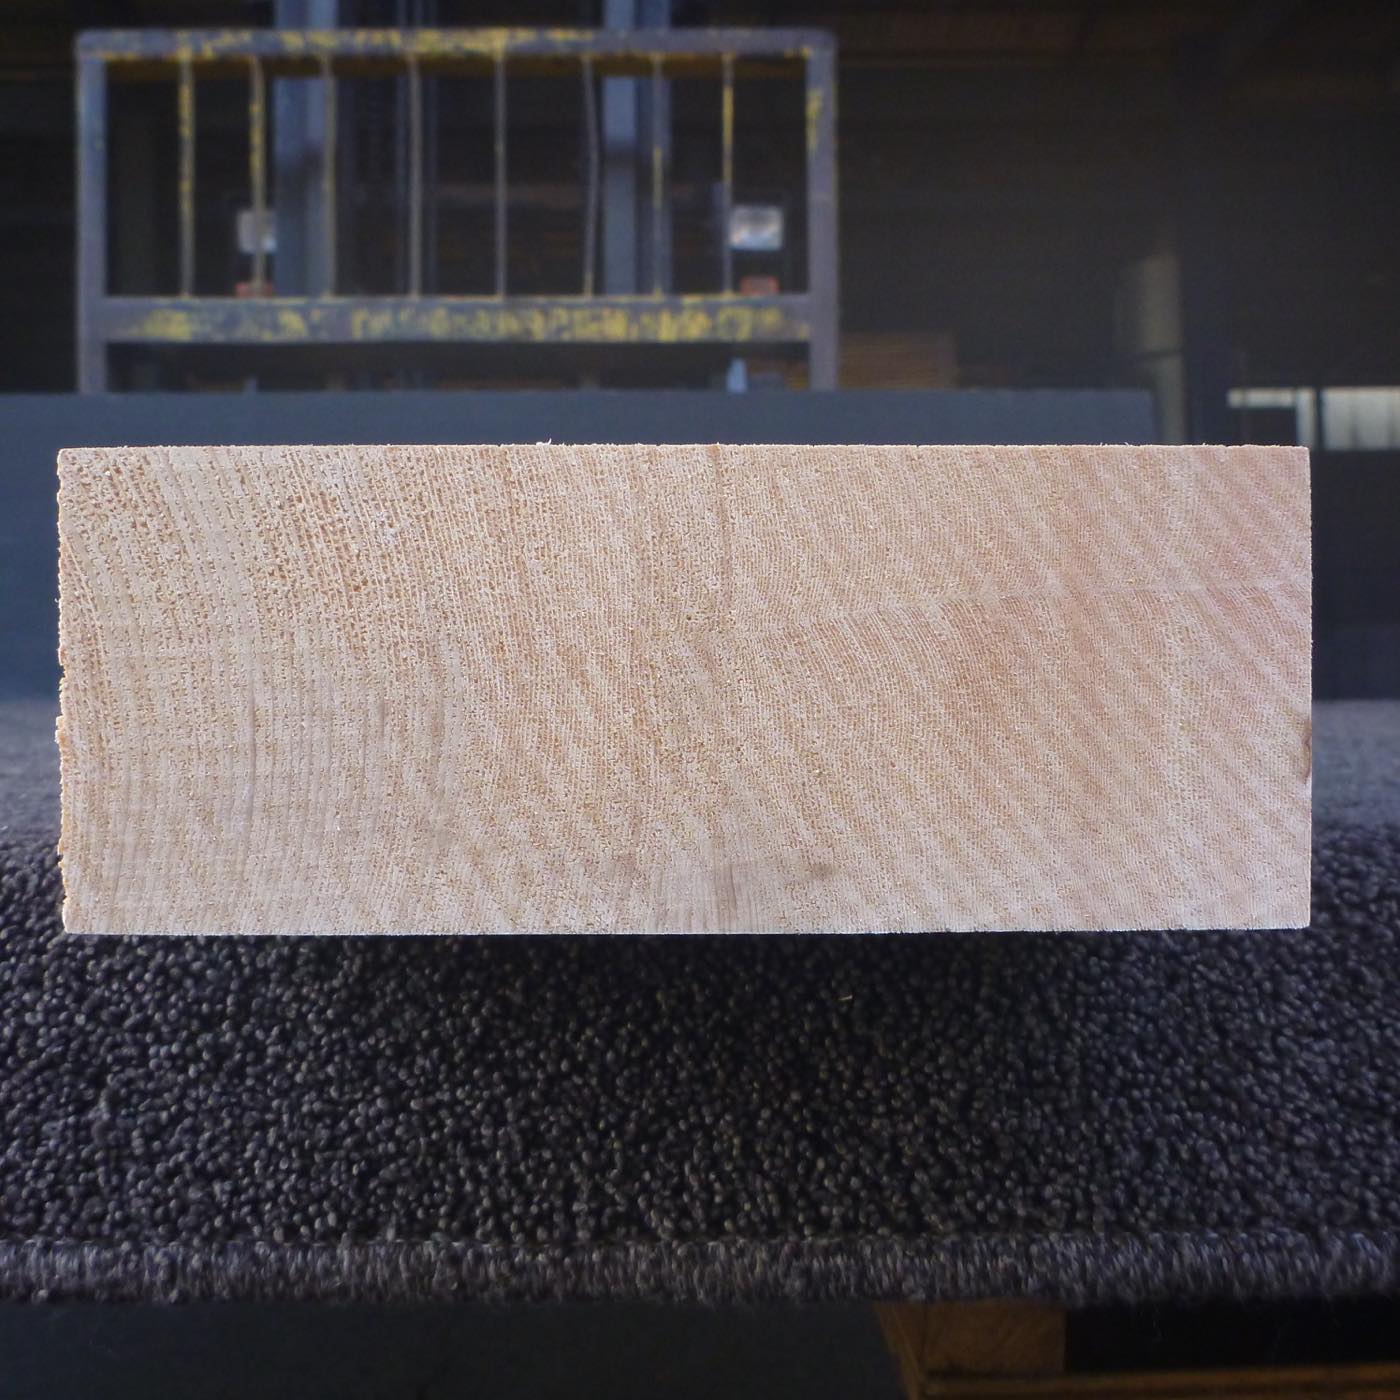 彫刻材 天然木曽檜 柾目盤 ラフ材 L560×T64×W165mm 560064165 Aグレード